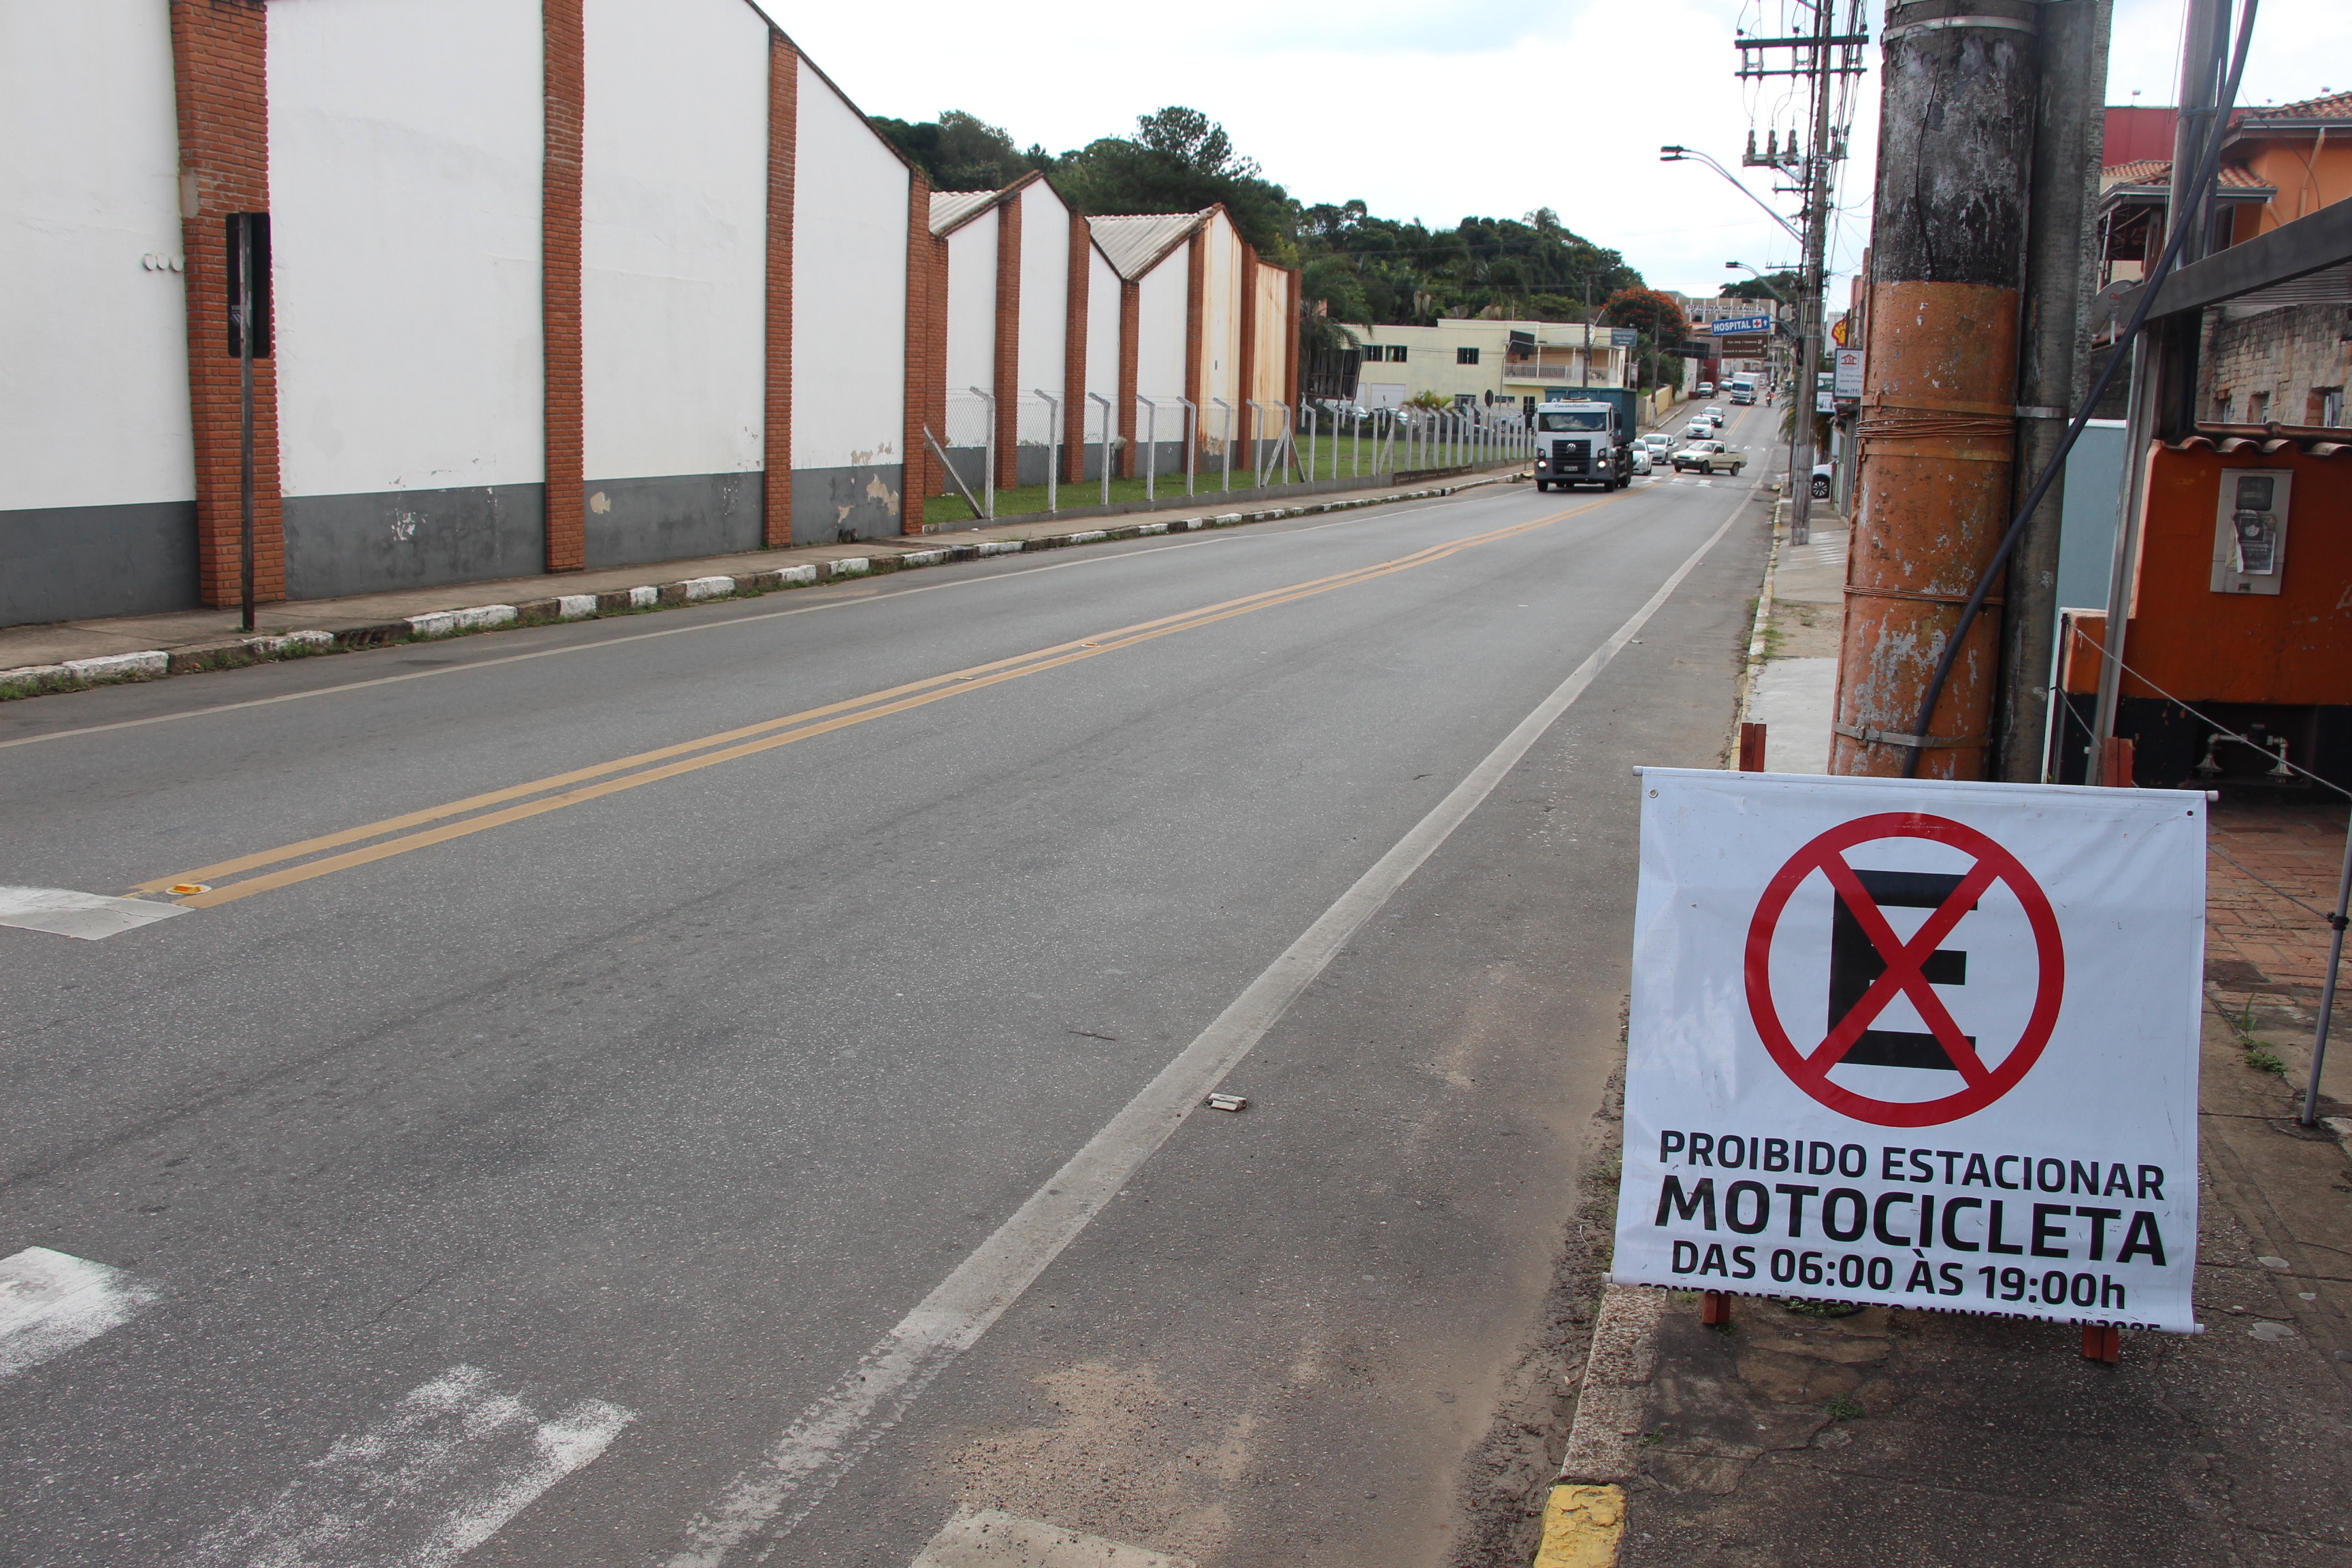  Morungaba proíbe estacionamento de motos neste fim de semana